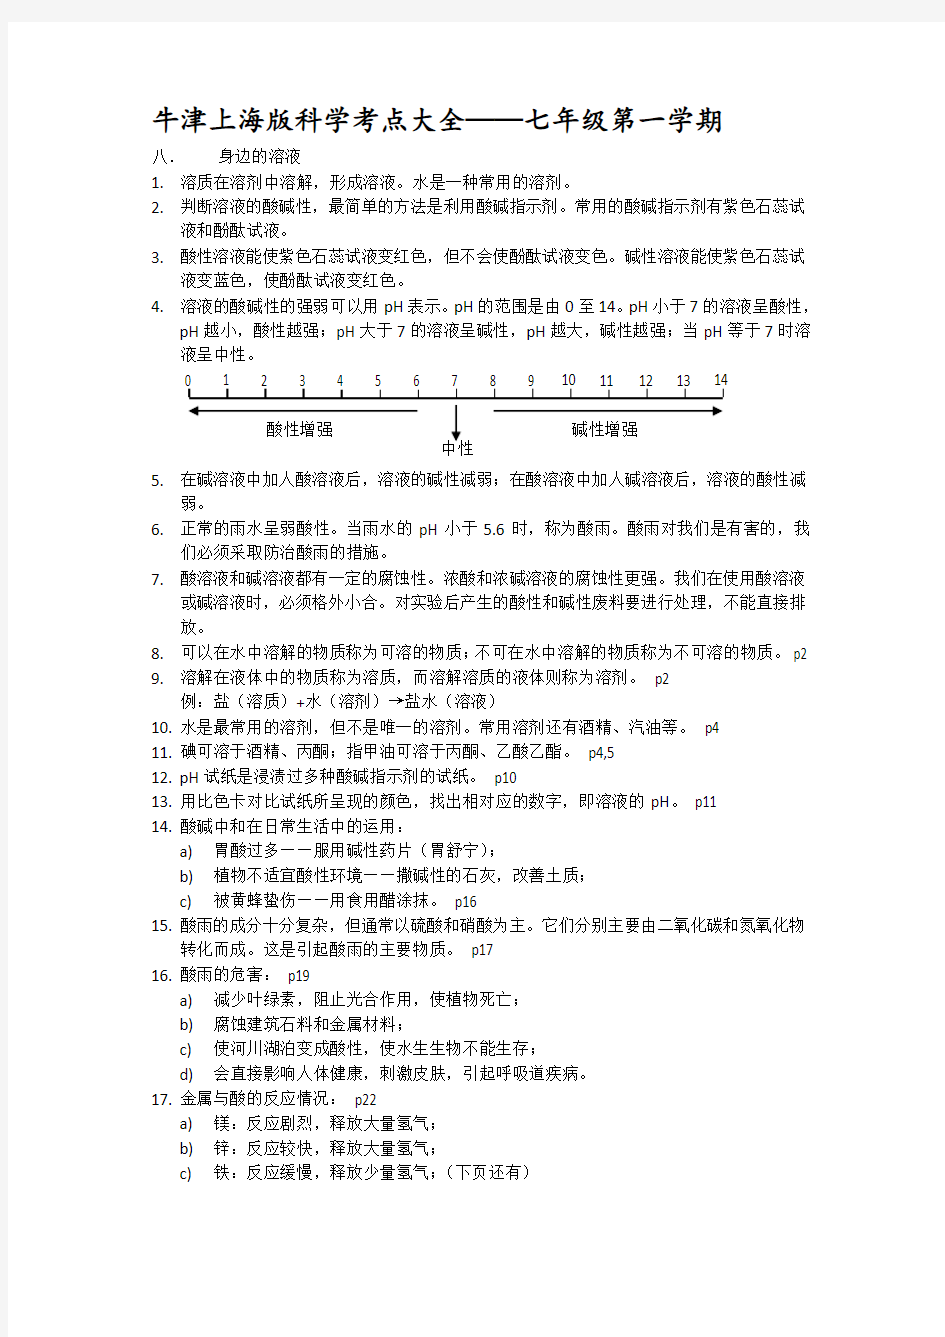 (完整版)上海初中科学会考知识点汇总——七年级第一学期牛津版